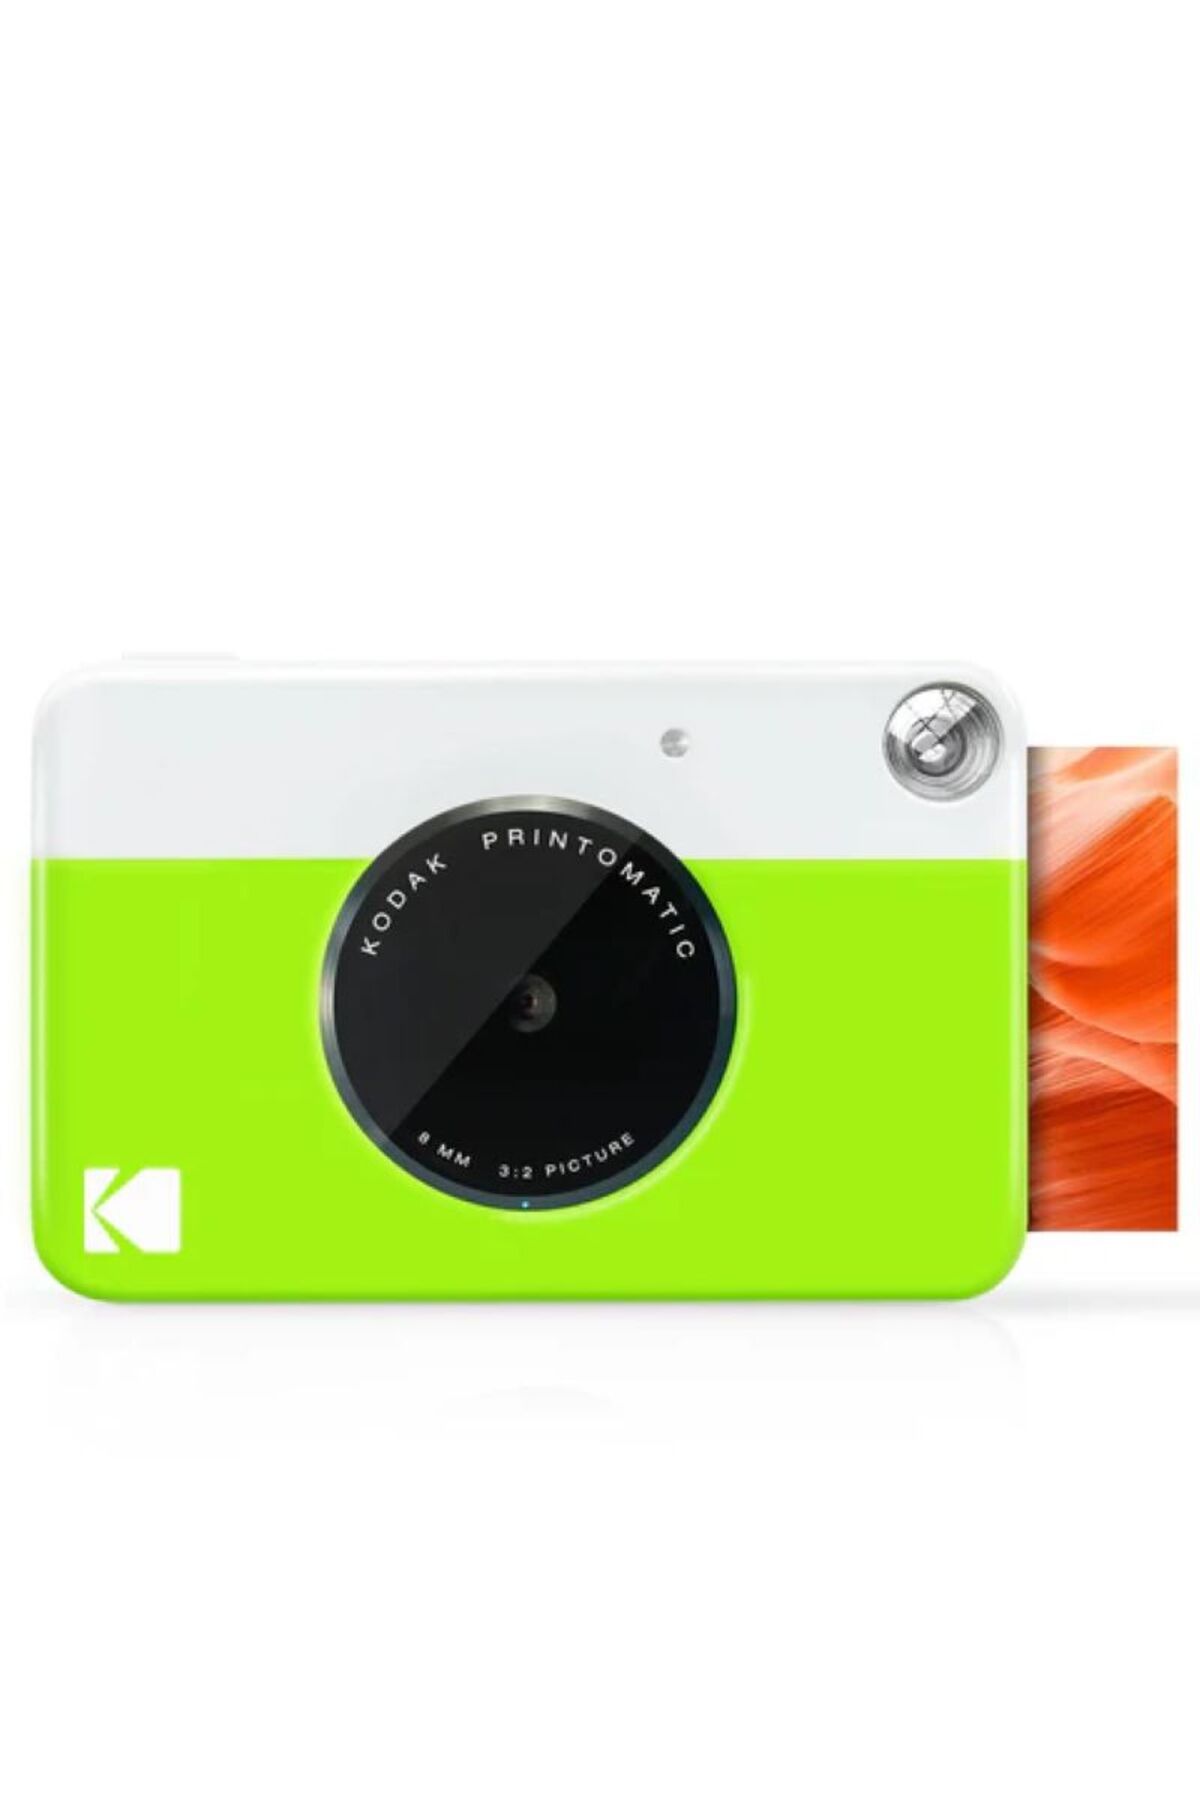 Kodak Printomatic Anında Baskı Kamerası - Bas, Yakala ve Paylaş